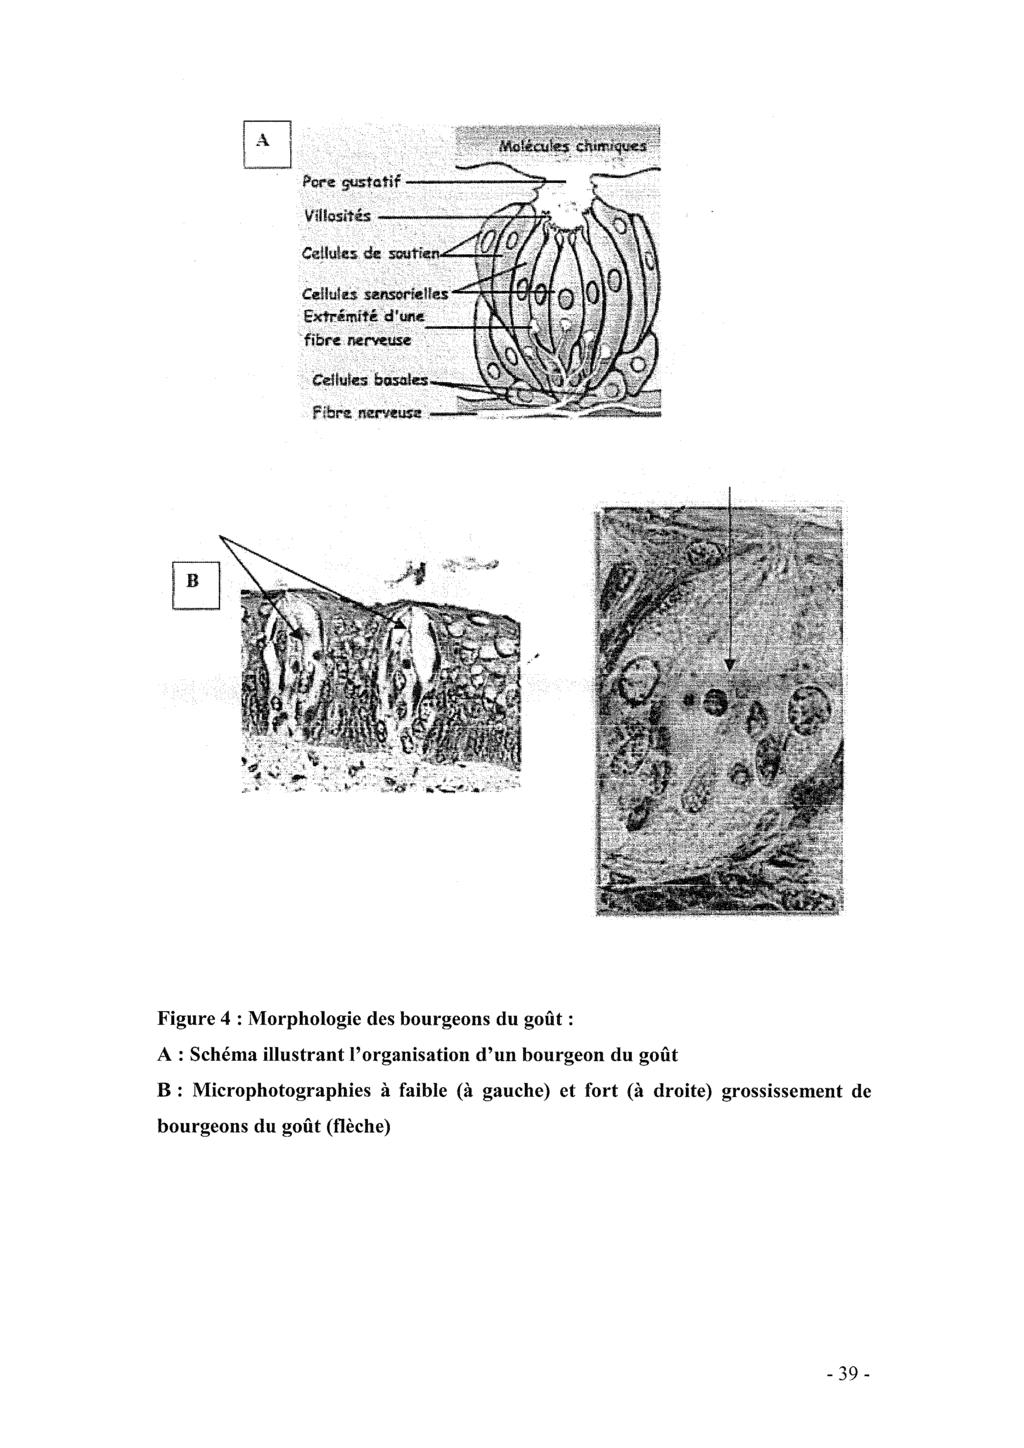 Figure 4 : Morphologie des bourgeons du goût : A : Schéma illustrant l'organisation d'un bourgeon du goût